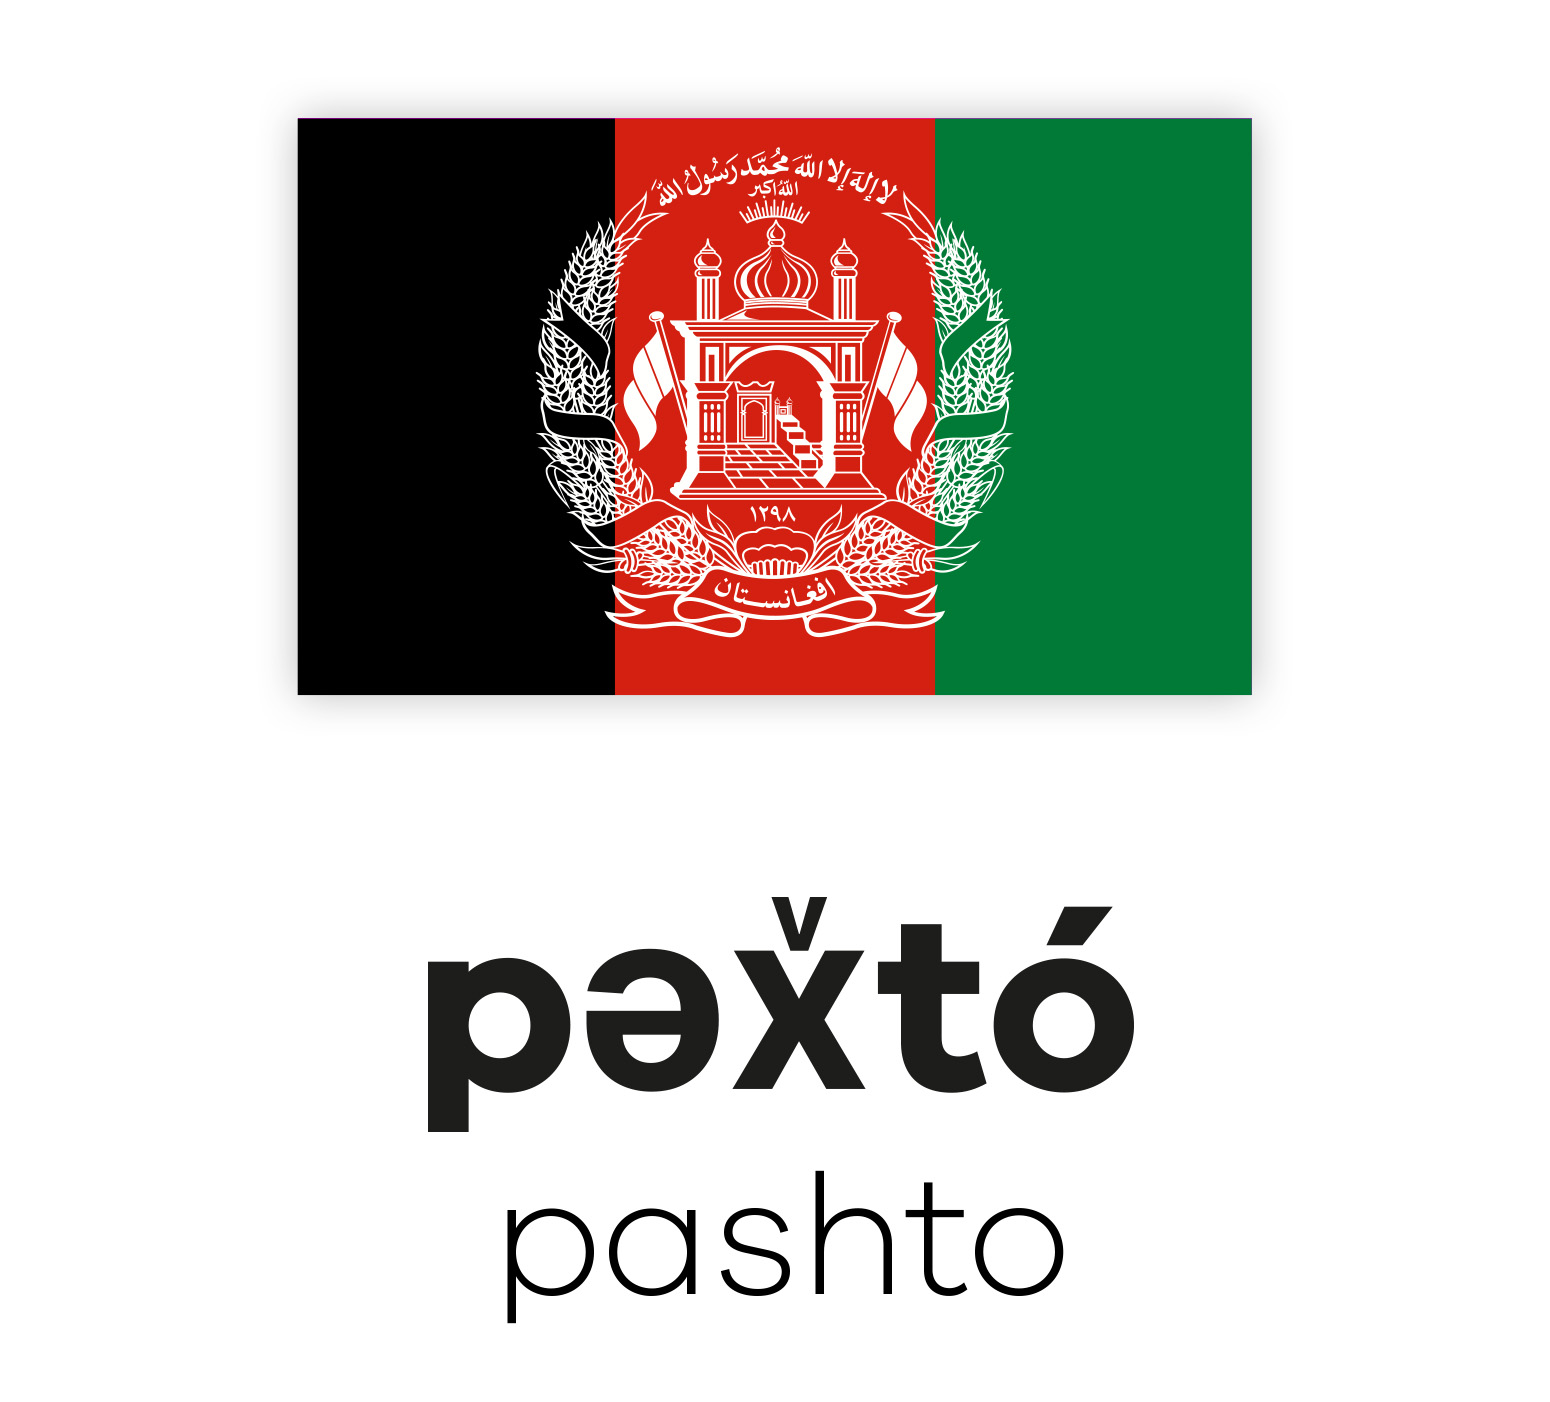 Flagge Afghanistans über dem Wort "Pashto" in lateinischen und paschtunischen Schriftzeichen, repräsentiert die Sprache Pashto.